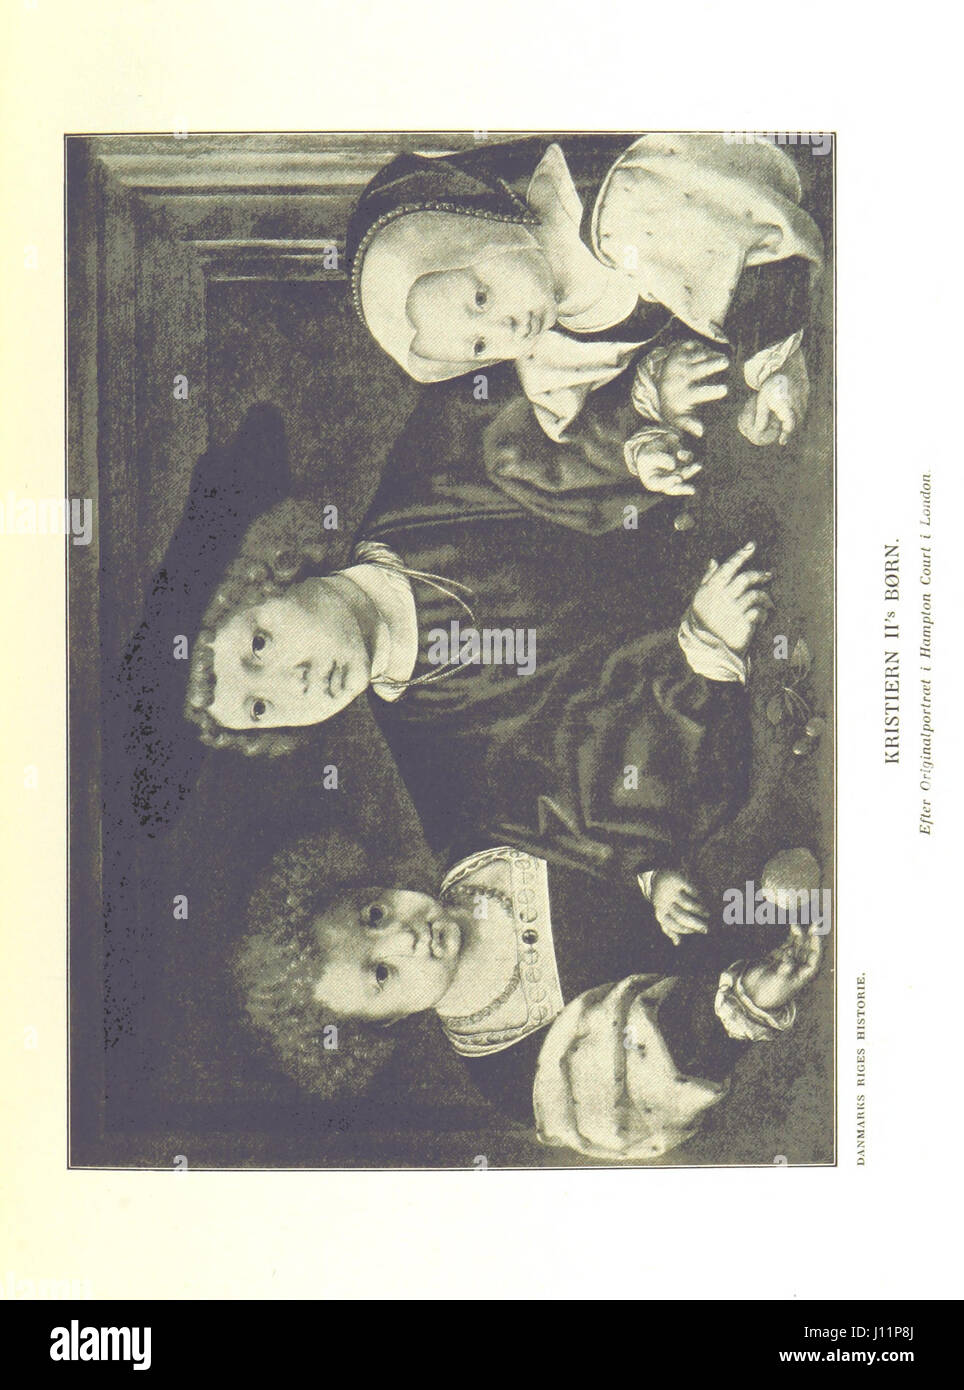 Danmarks Riges Historie af J. Steenstrup, Kr. Erslev, A. Heise, V. Mollerup, J. A. Fridericia, E. Holm, A. D. Jørgensen. Historisk illustreret Stock Photo